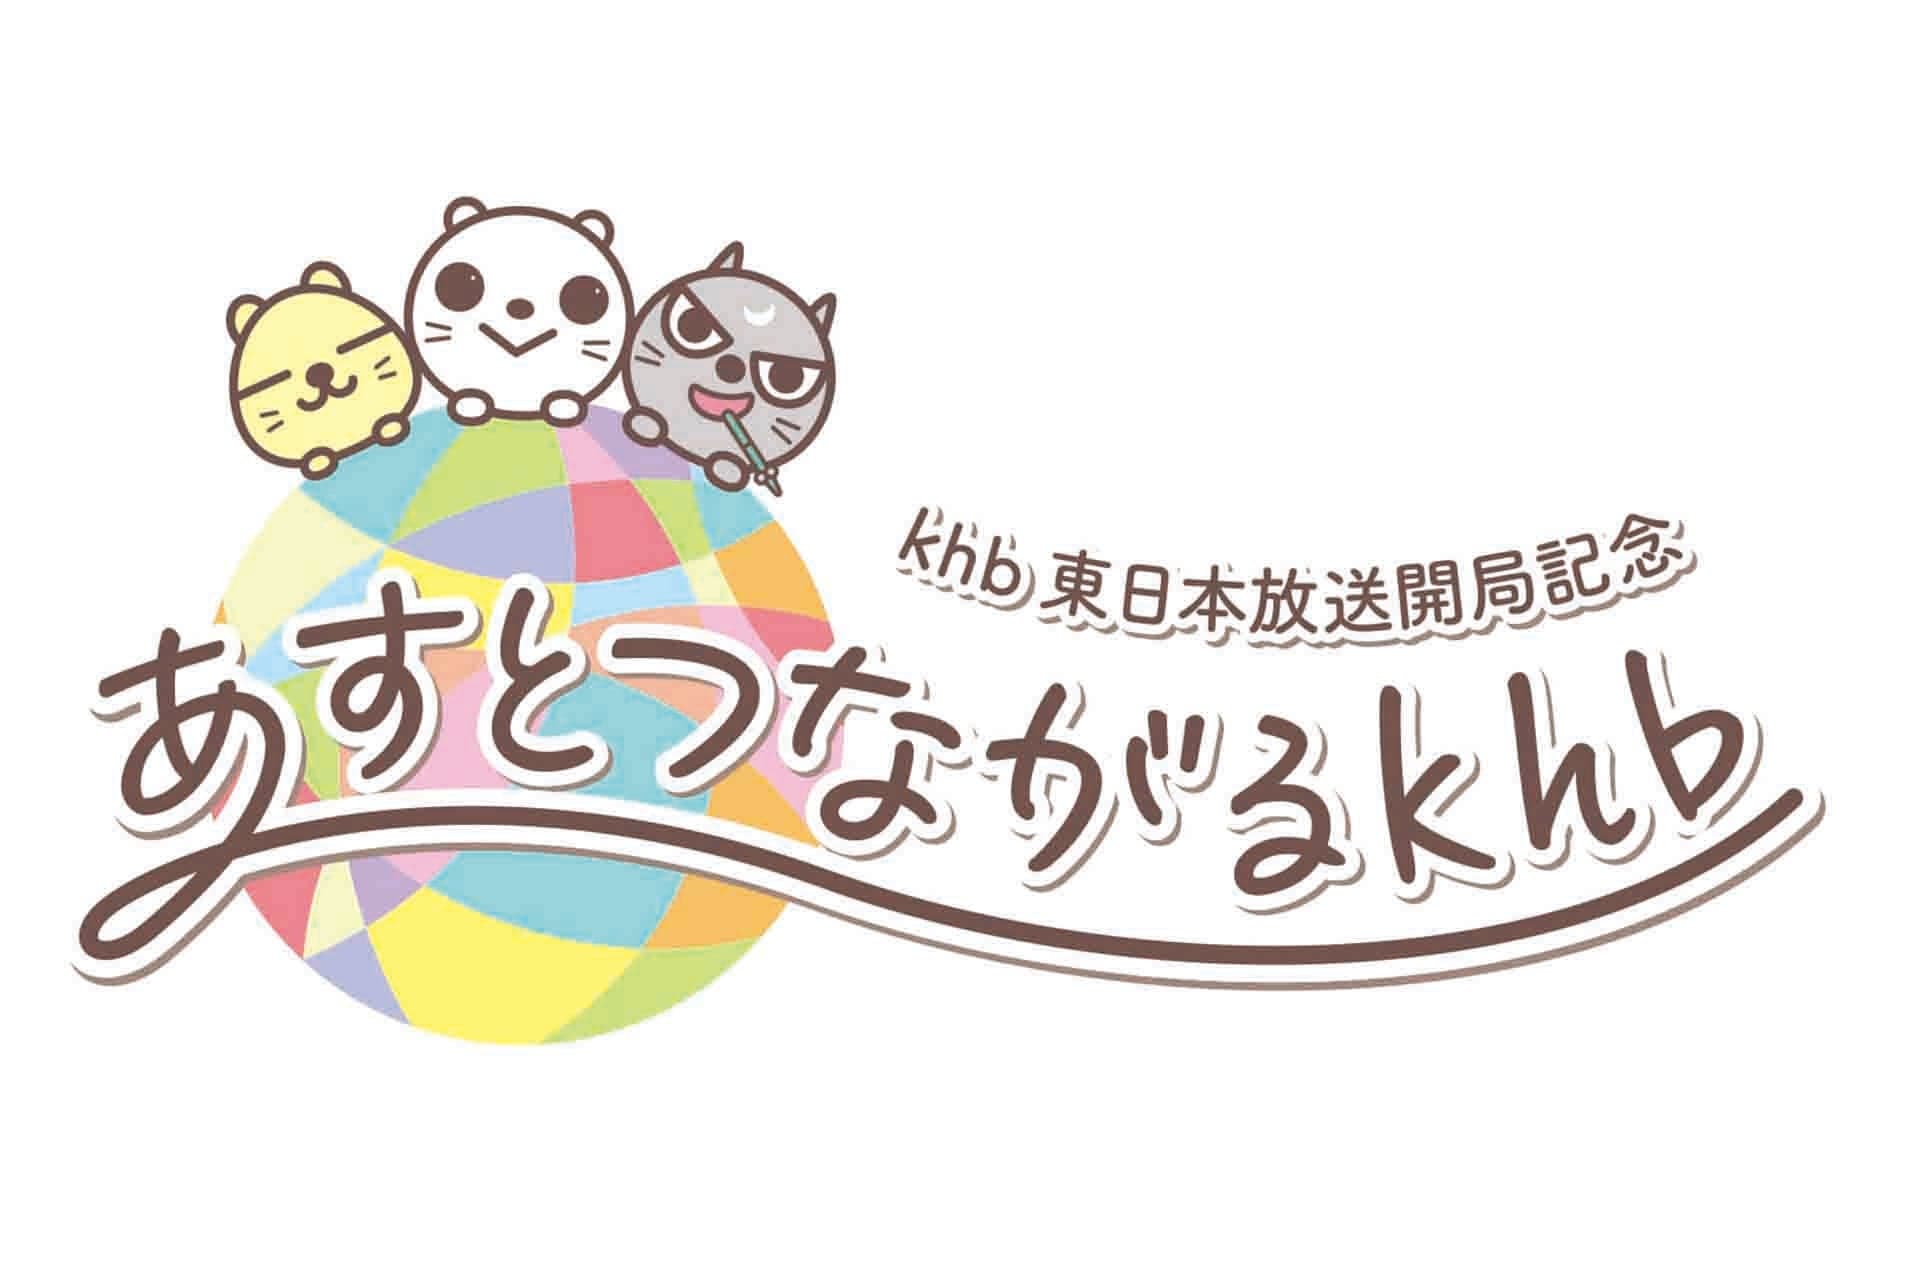 2022年10月1日 khb東日本放送開局記念「あすとつながるkhb」ロゴを乃村工藝社 IVDが担当